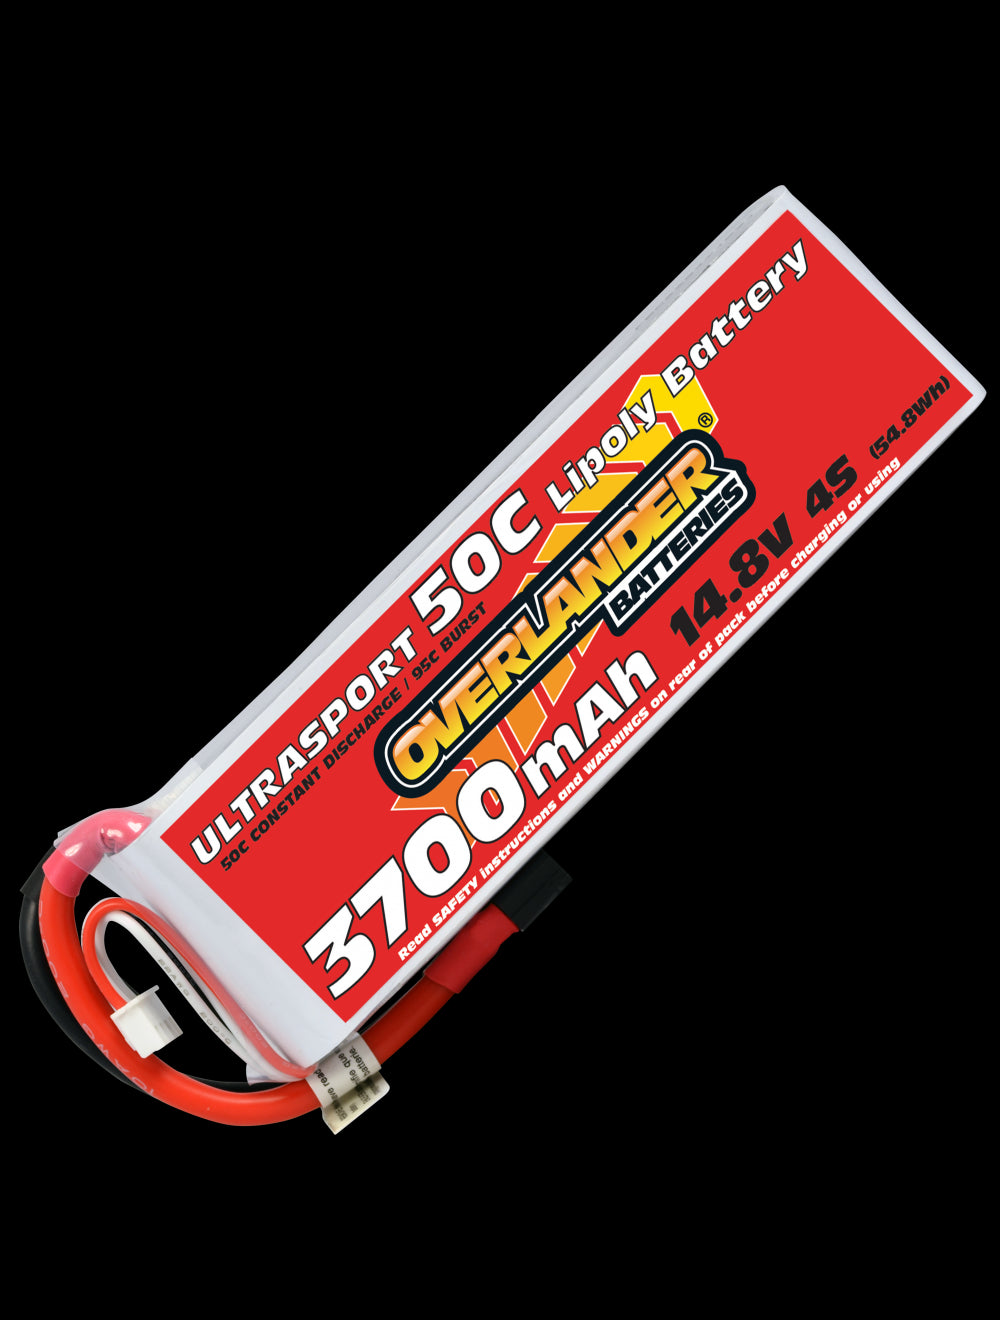 Overlander 3700mAh 14.8V 4S 50C Ultrasport LiPo Battery - XT90 Connector 2629